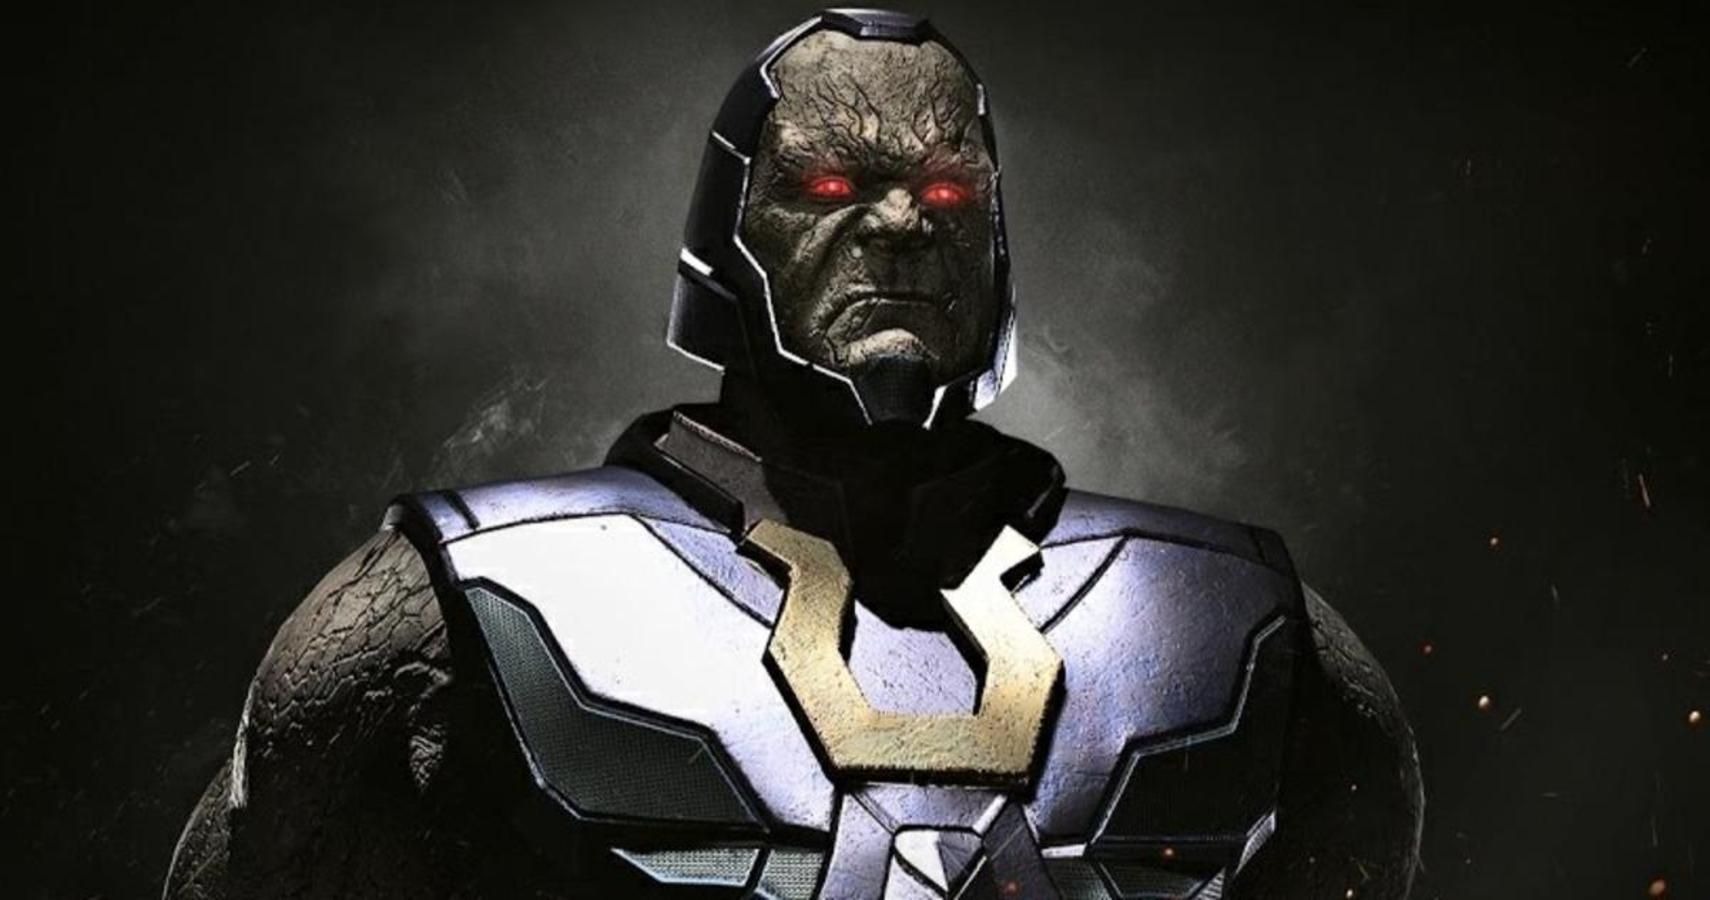 thanos vs darkseid who would win